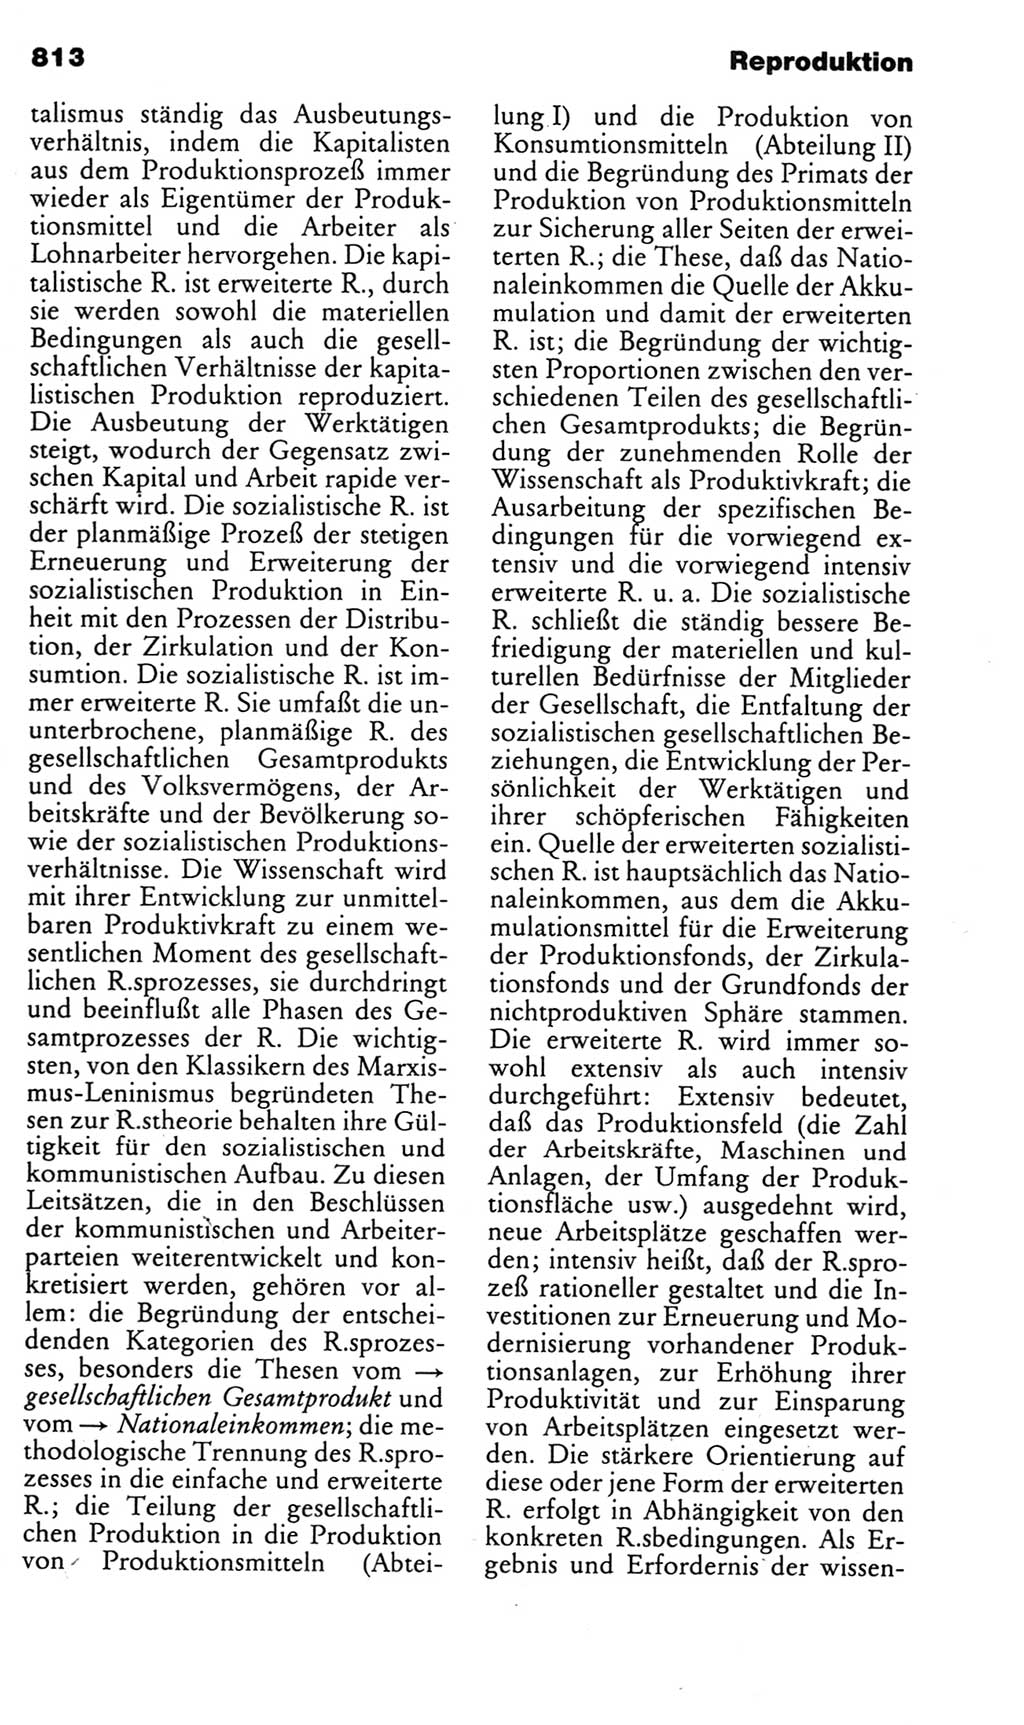 Kleines politisches Wörterbuch [Deutsche Demokratische Republik (DDR)] 1985, Seite 813 (Kl. pol. Wb. DDR 1985, S. 813)